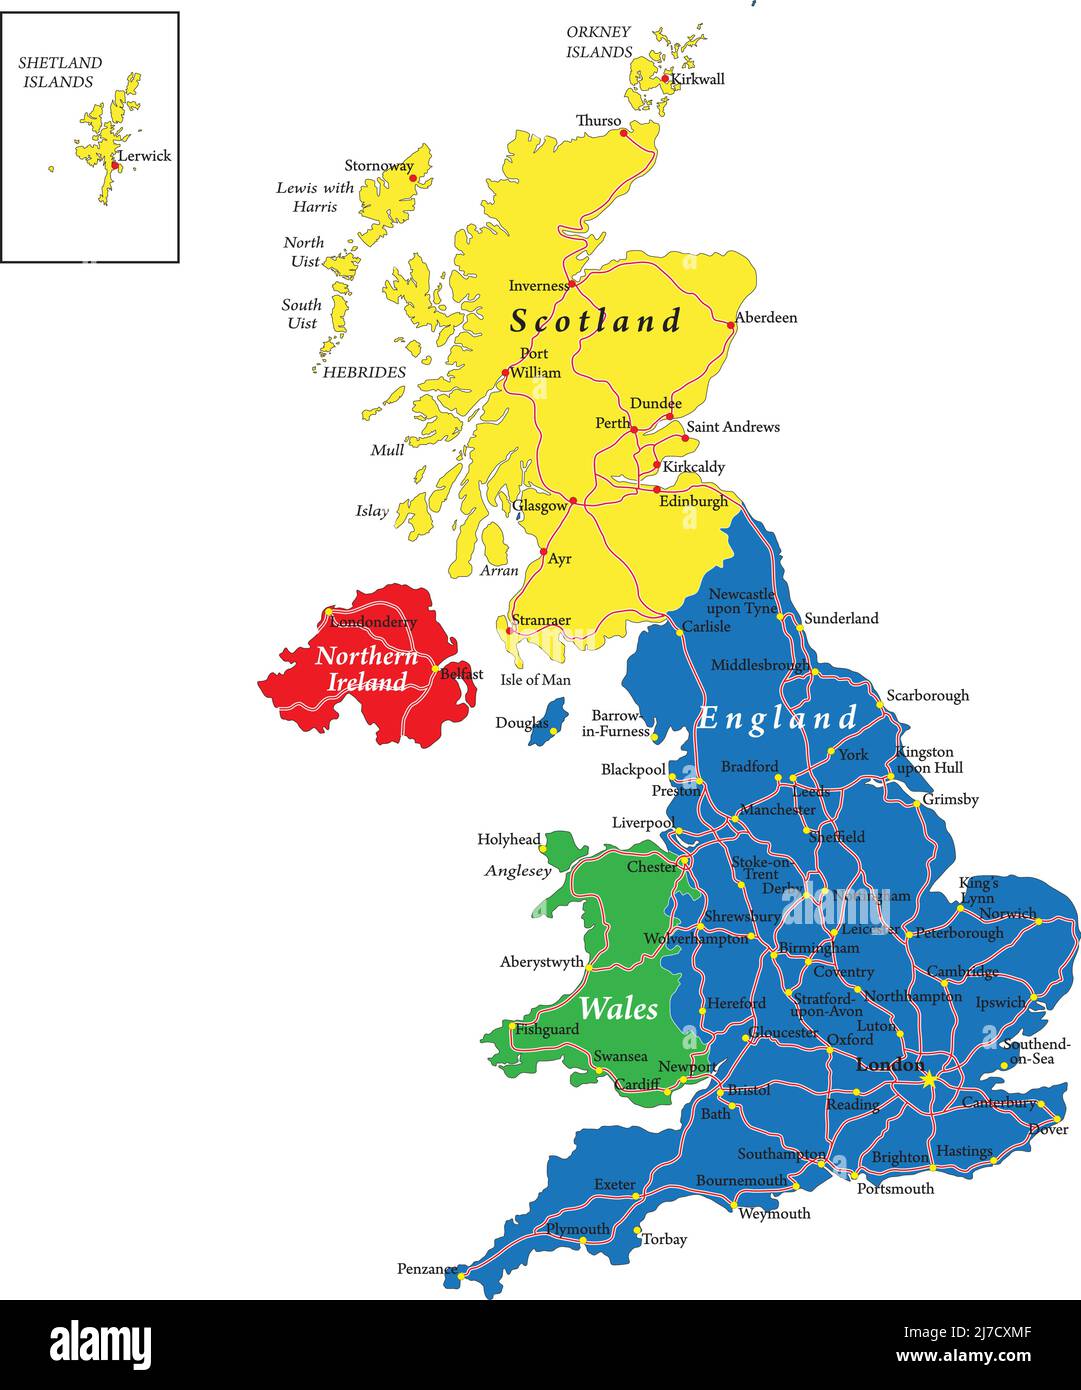 Mappa vettoriale molto dettagliata del Regno Unito con regioni amministrative, principali città e strade. Illustrazione Vettoriale